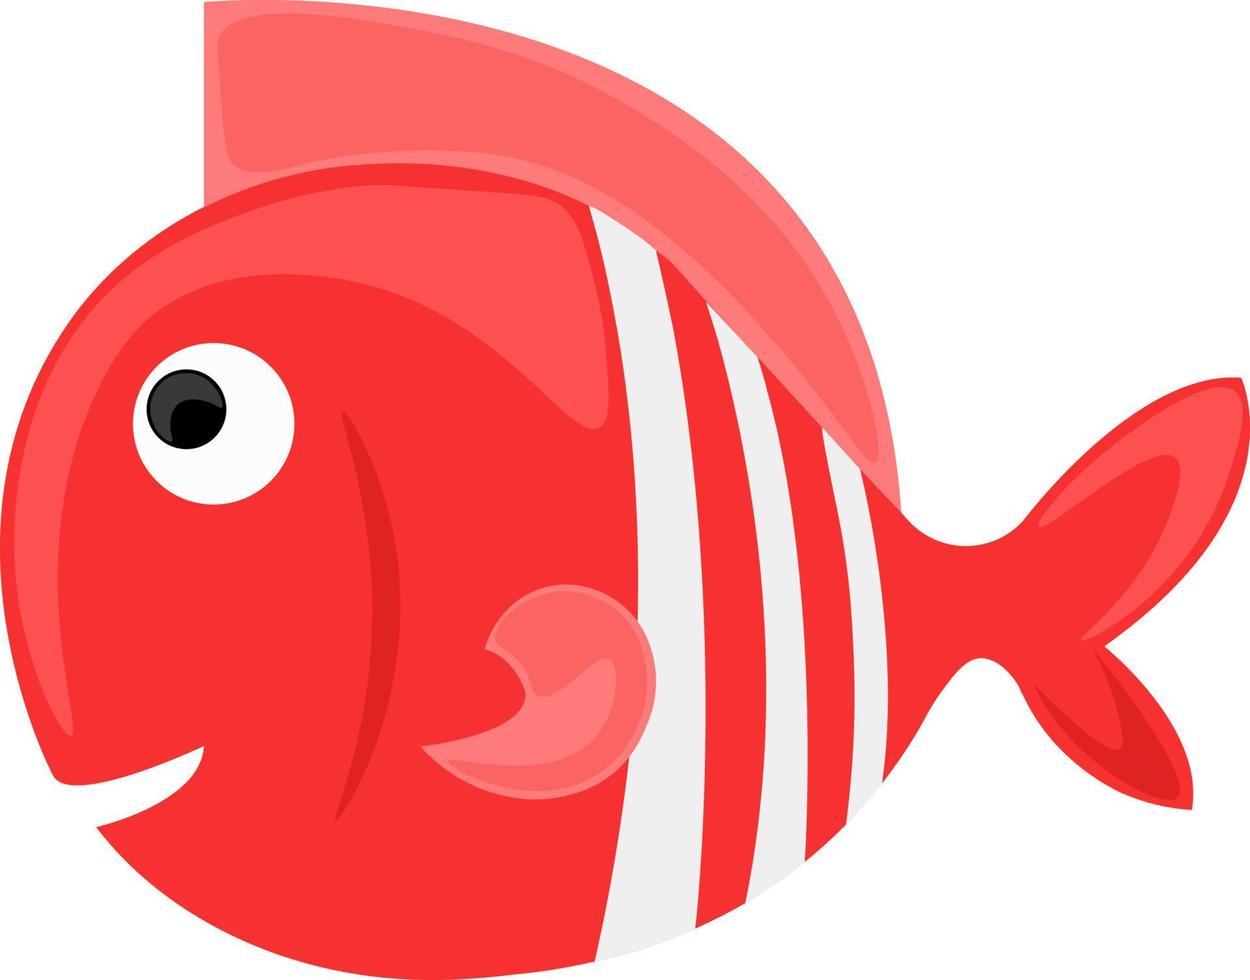 röd fisk, illustration, vektor på vit bakgrund.